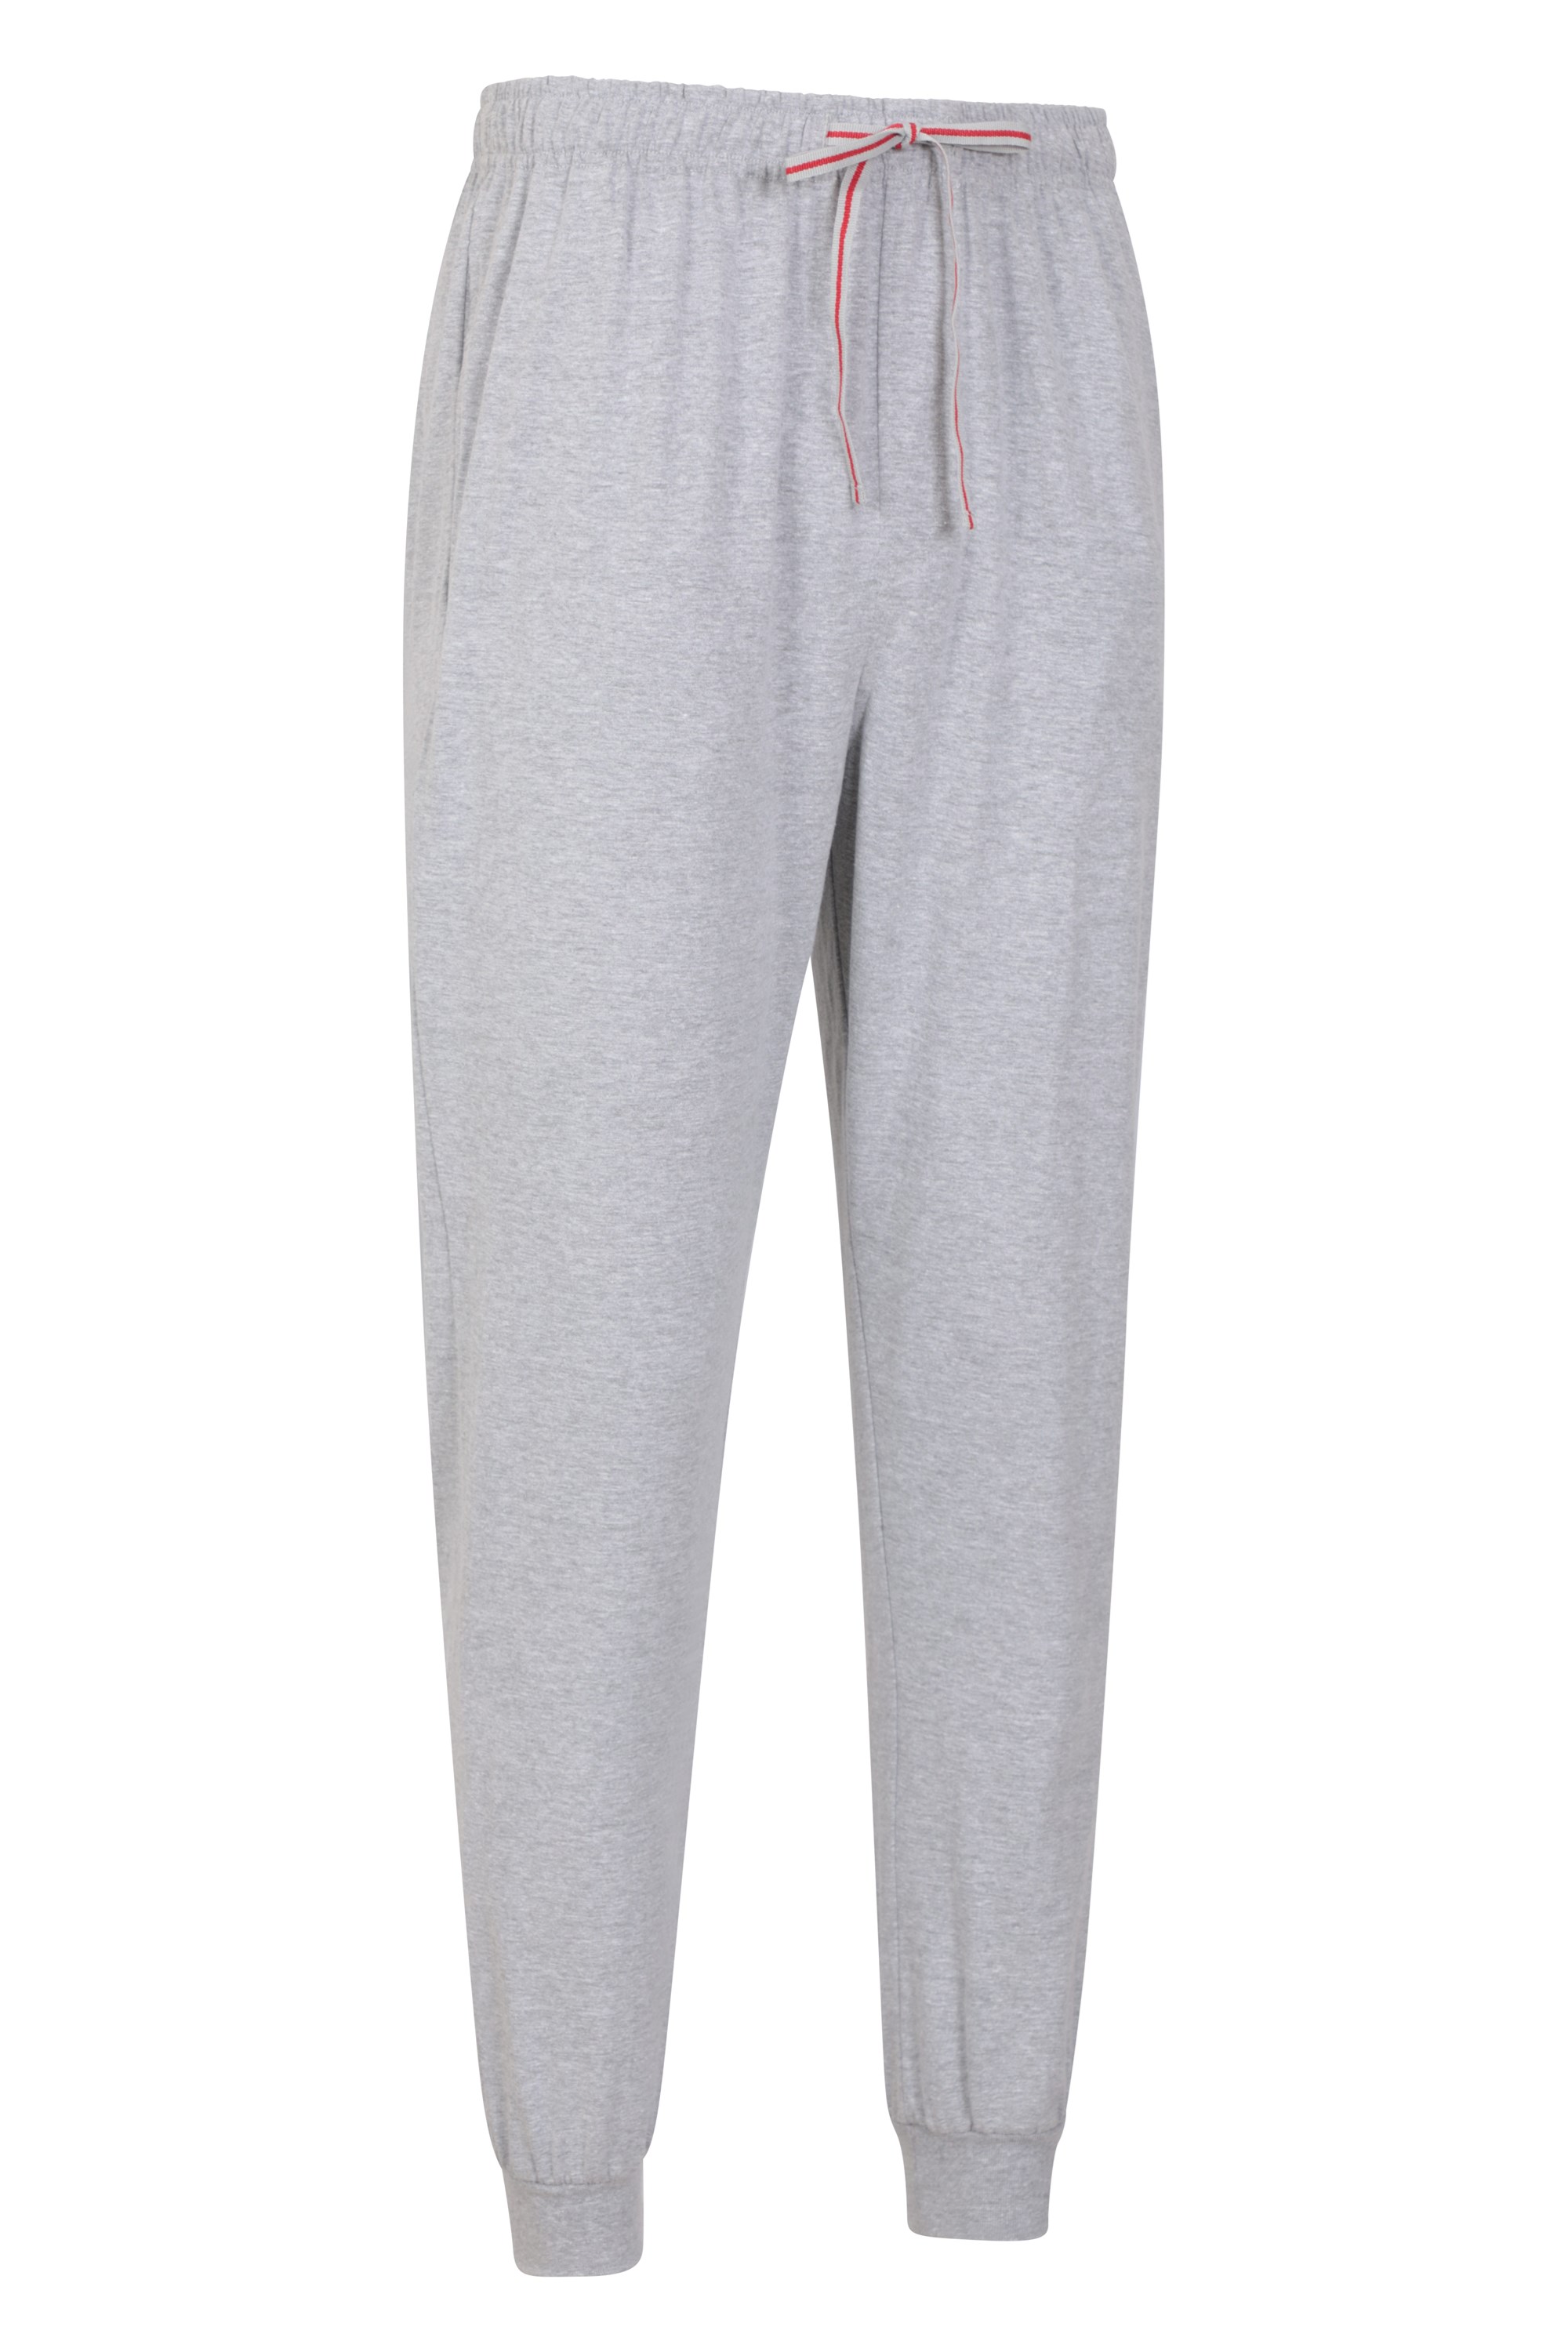 DKNY Signature Jogger Pyjama Set, Navy/Grey, S